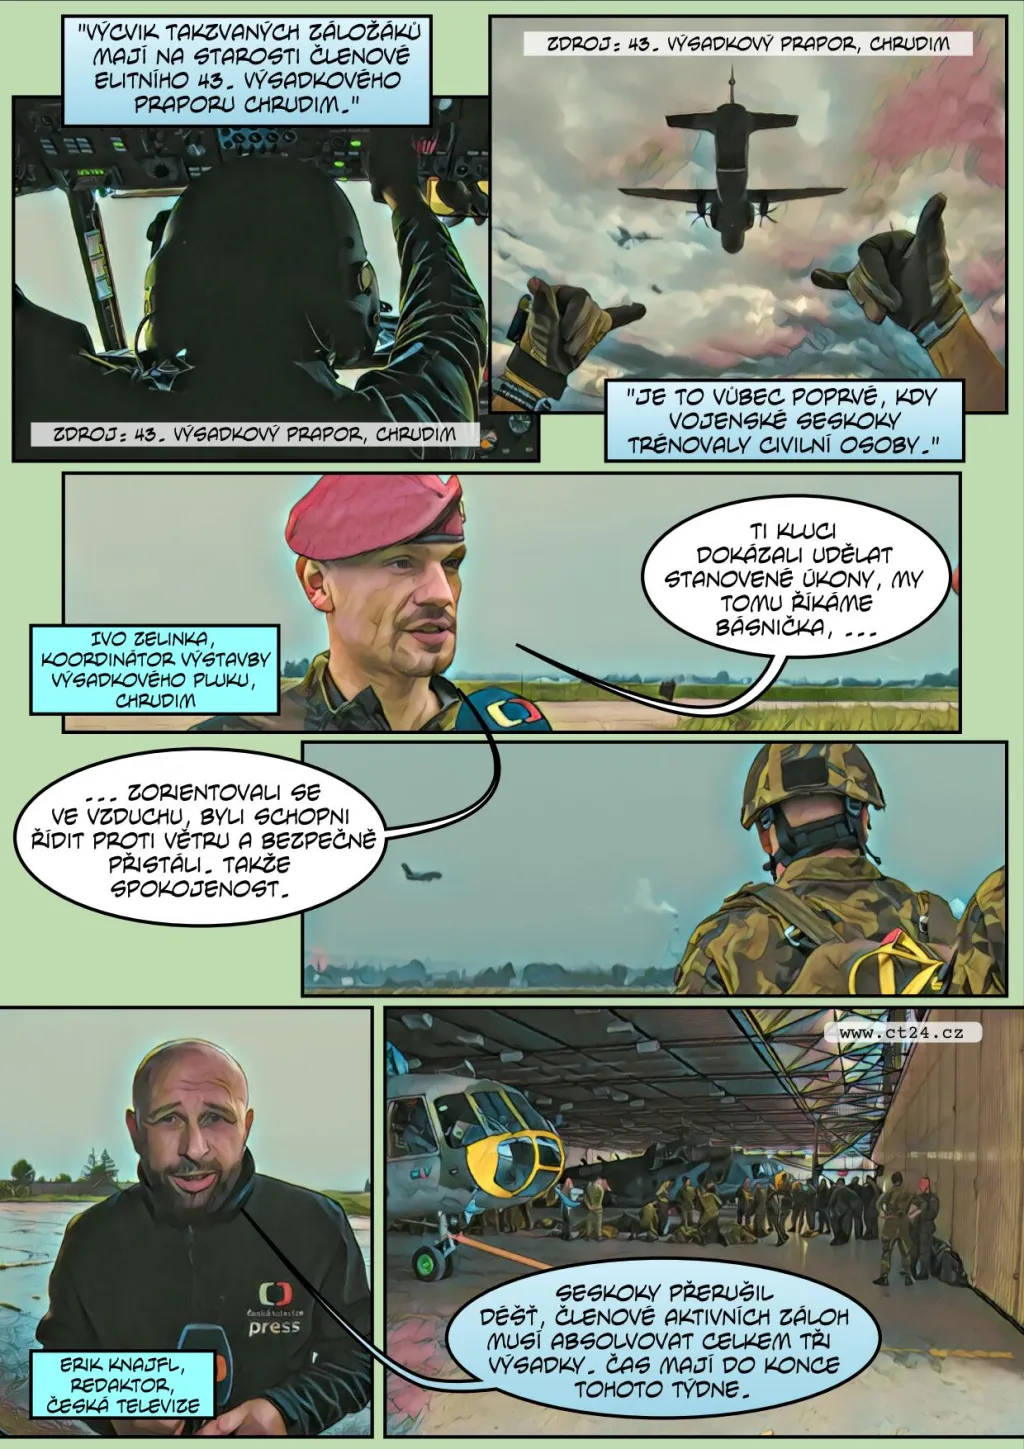 Komiks: Armáda chce zdvojnásobit aktivní zálohy